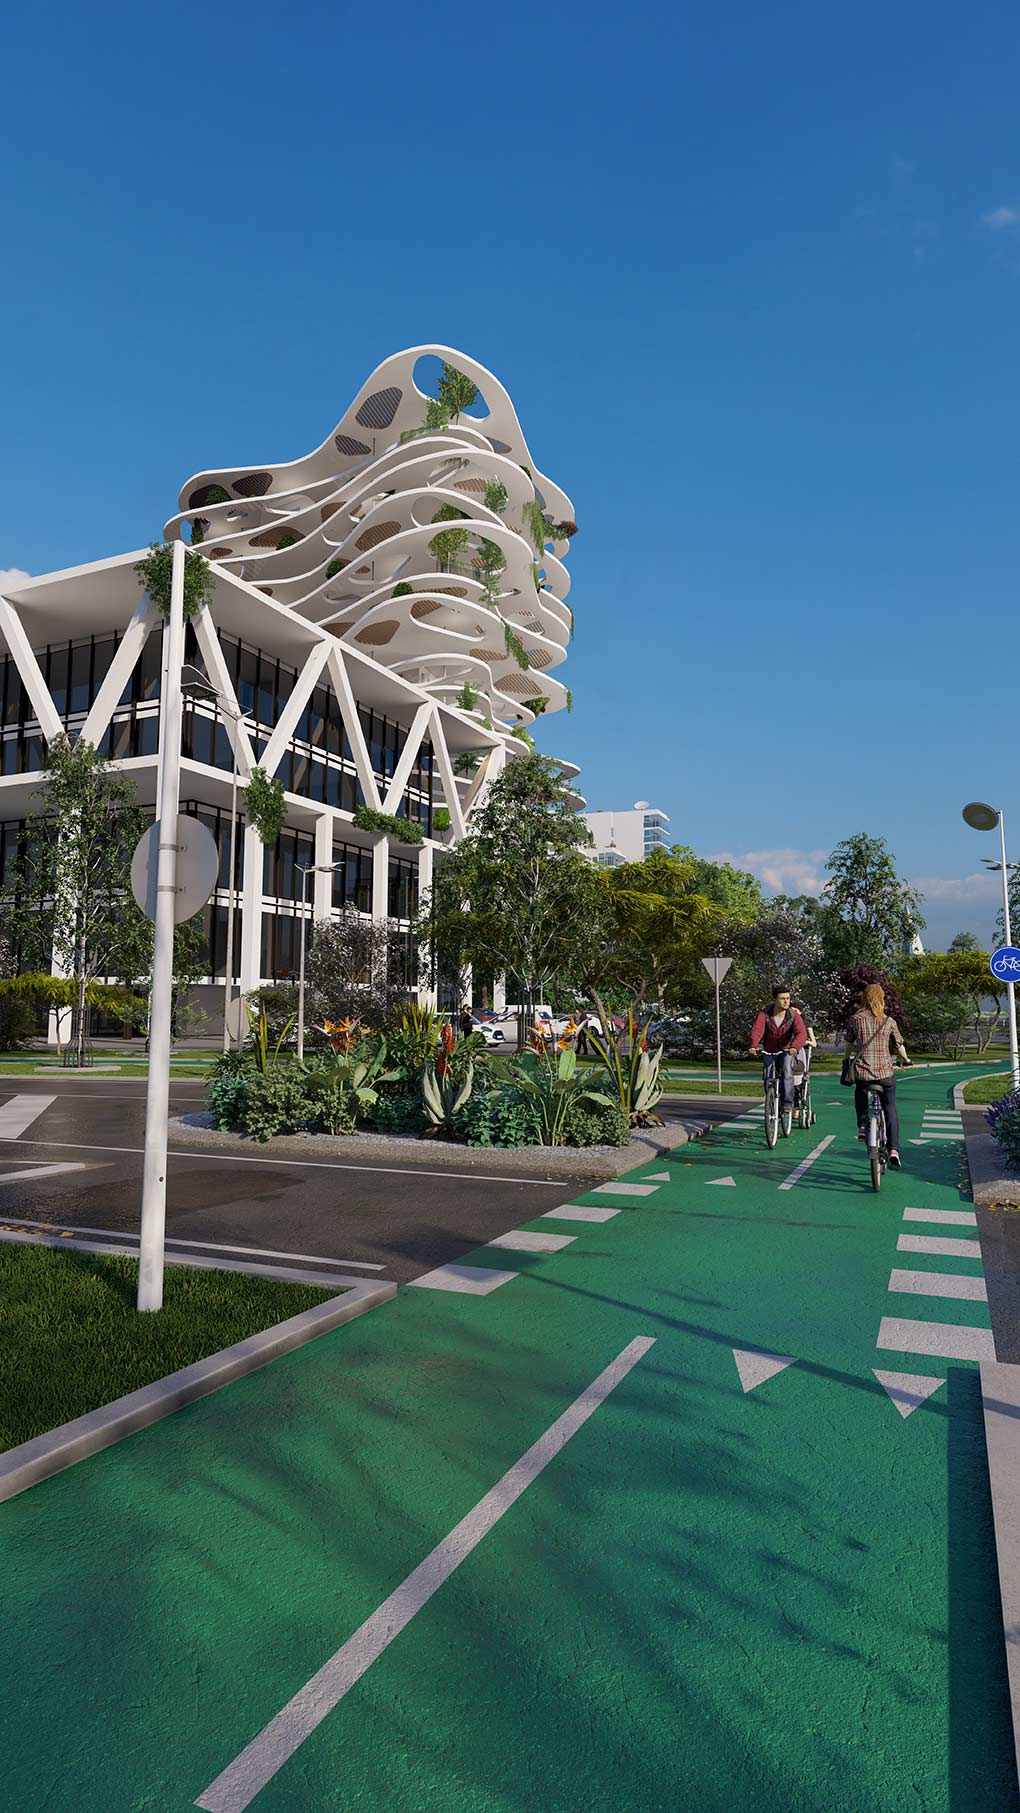 Architectes-Collectivites-projet-aménagement-urbain-perspective-3D-piste-cyclable